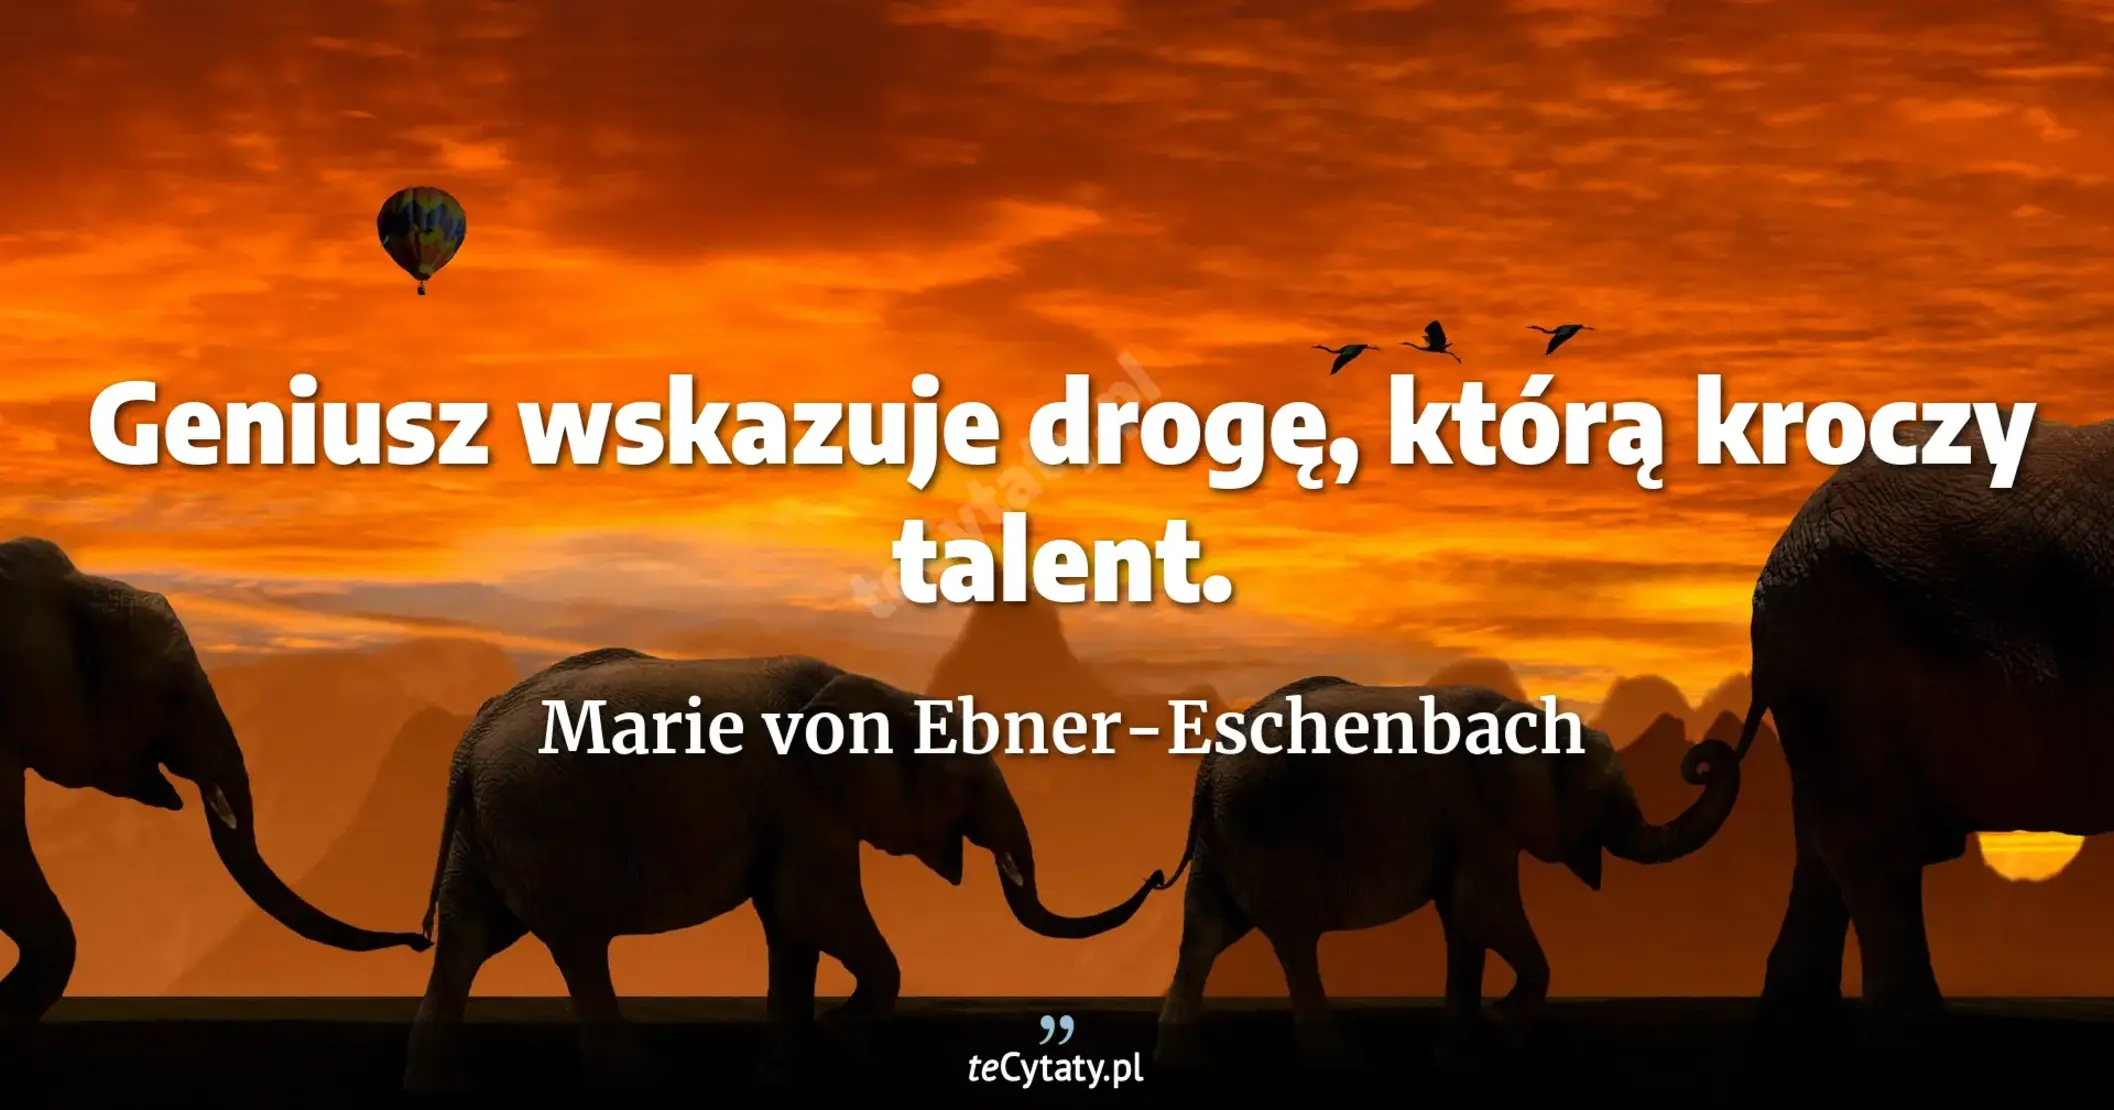 Geniusz wskazuje drogę, którą kroczy talent. - Marie von Ebner-Eschenbach